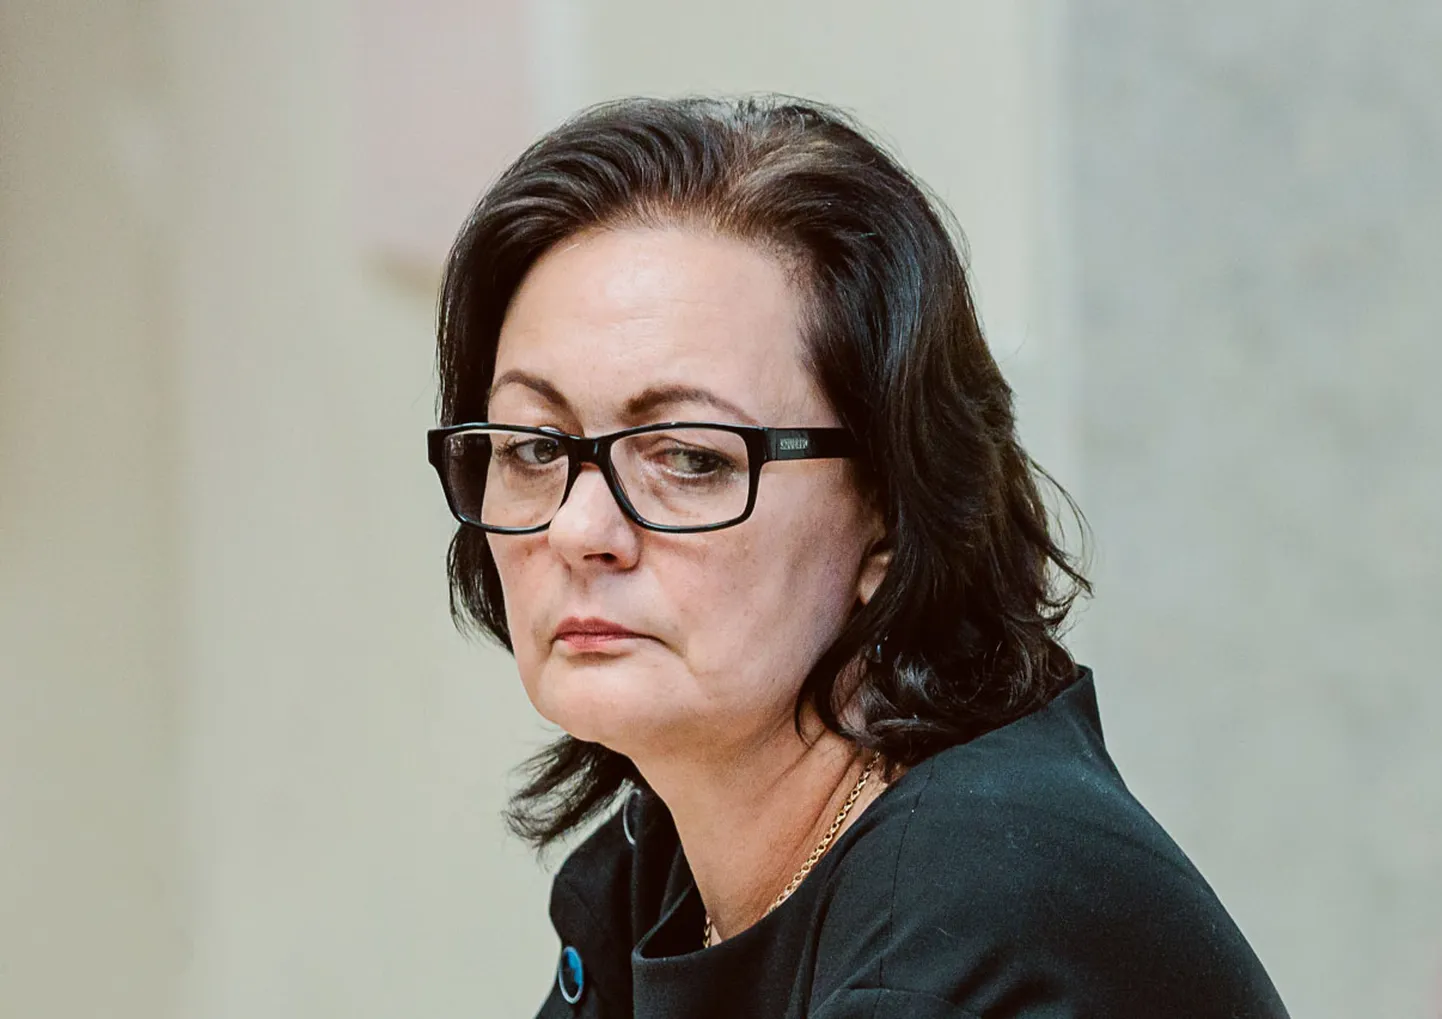 Narva volikogu esimees Irina Janovitš ei saa ministeeriumi arvates koolijuhina töötada, sest tal puudub nõuetekohane magistrikraad.